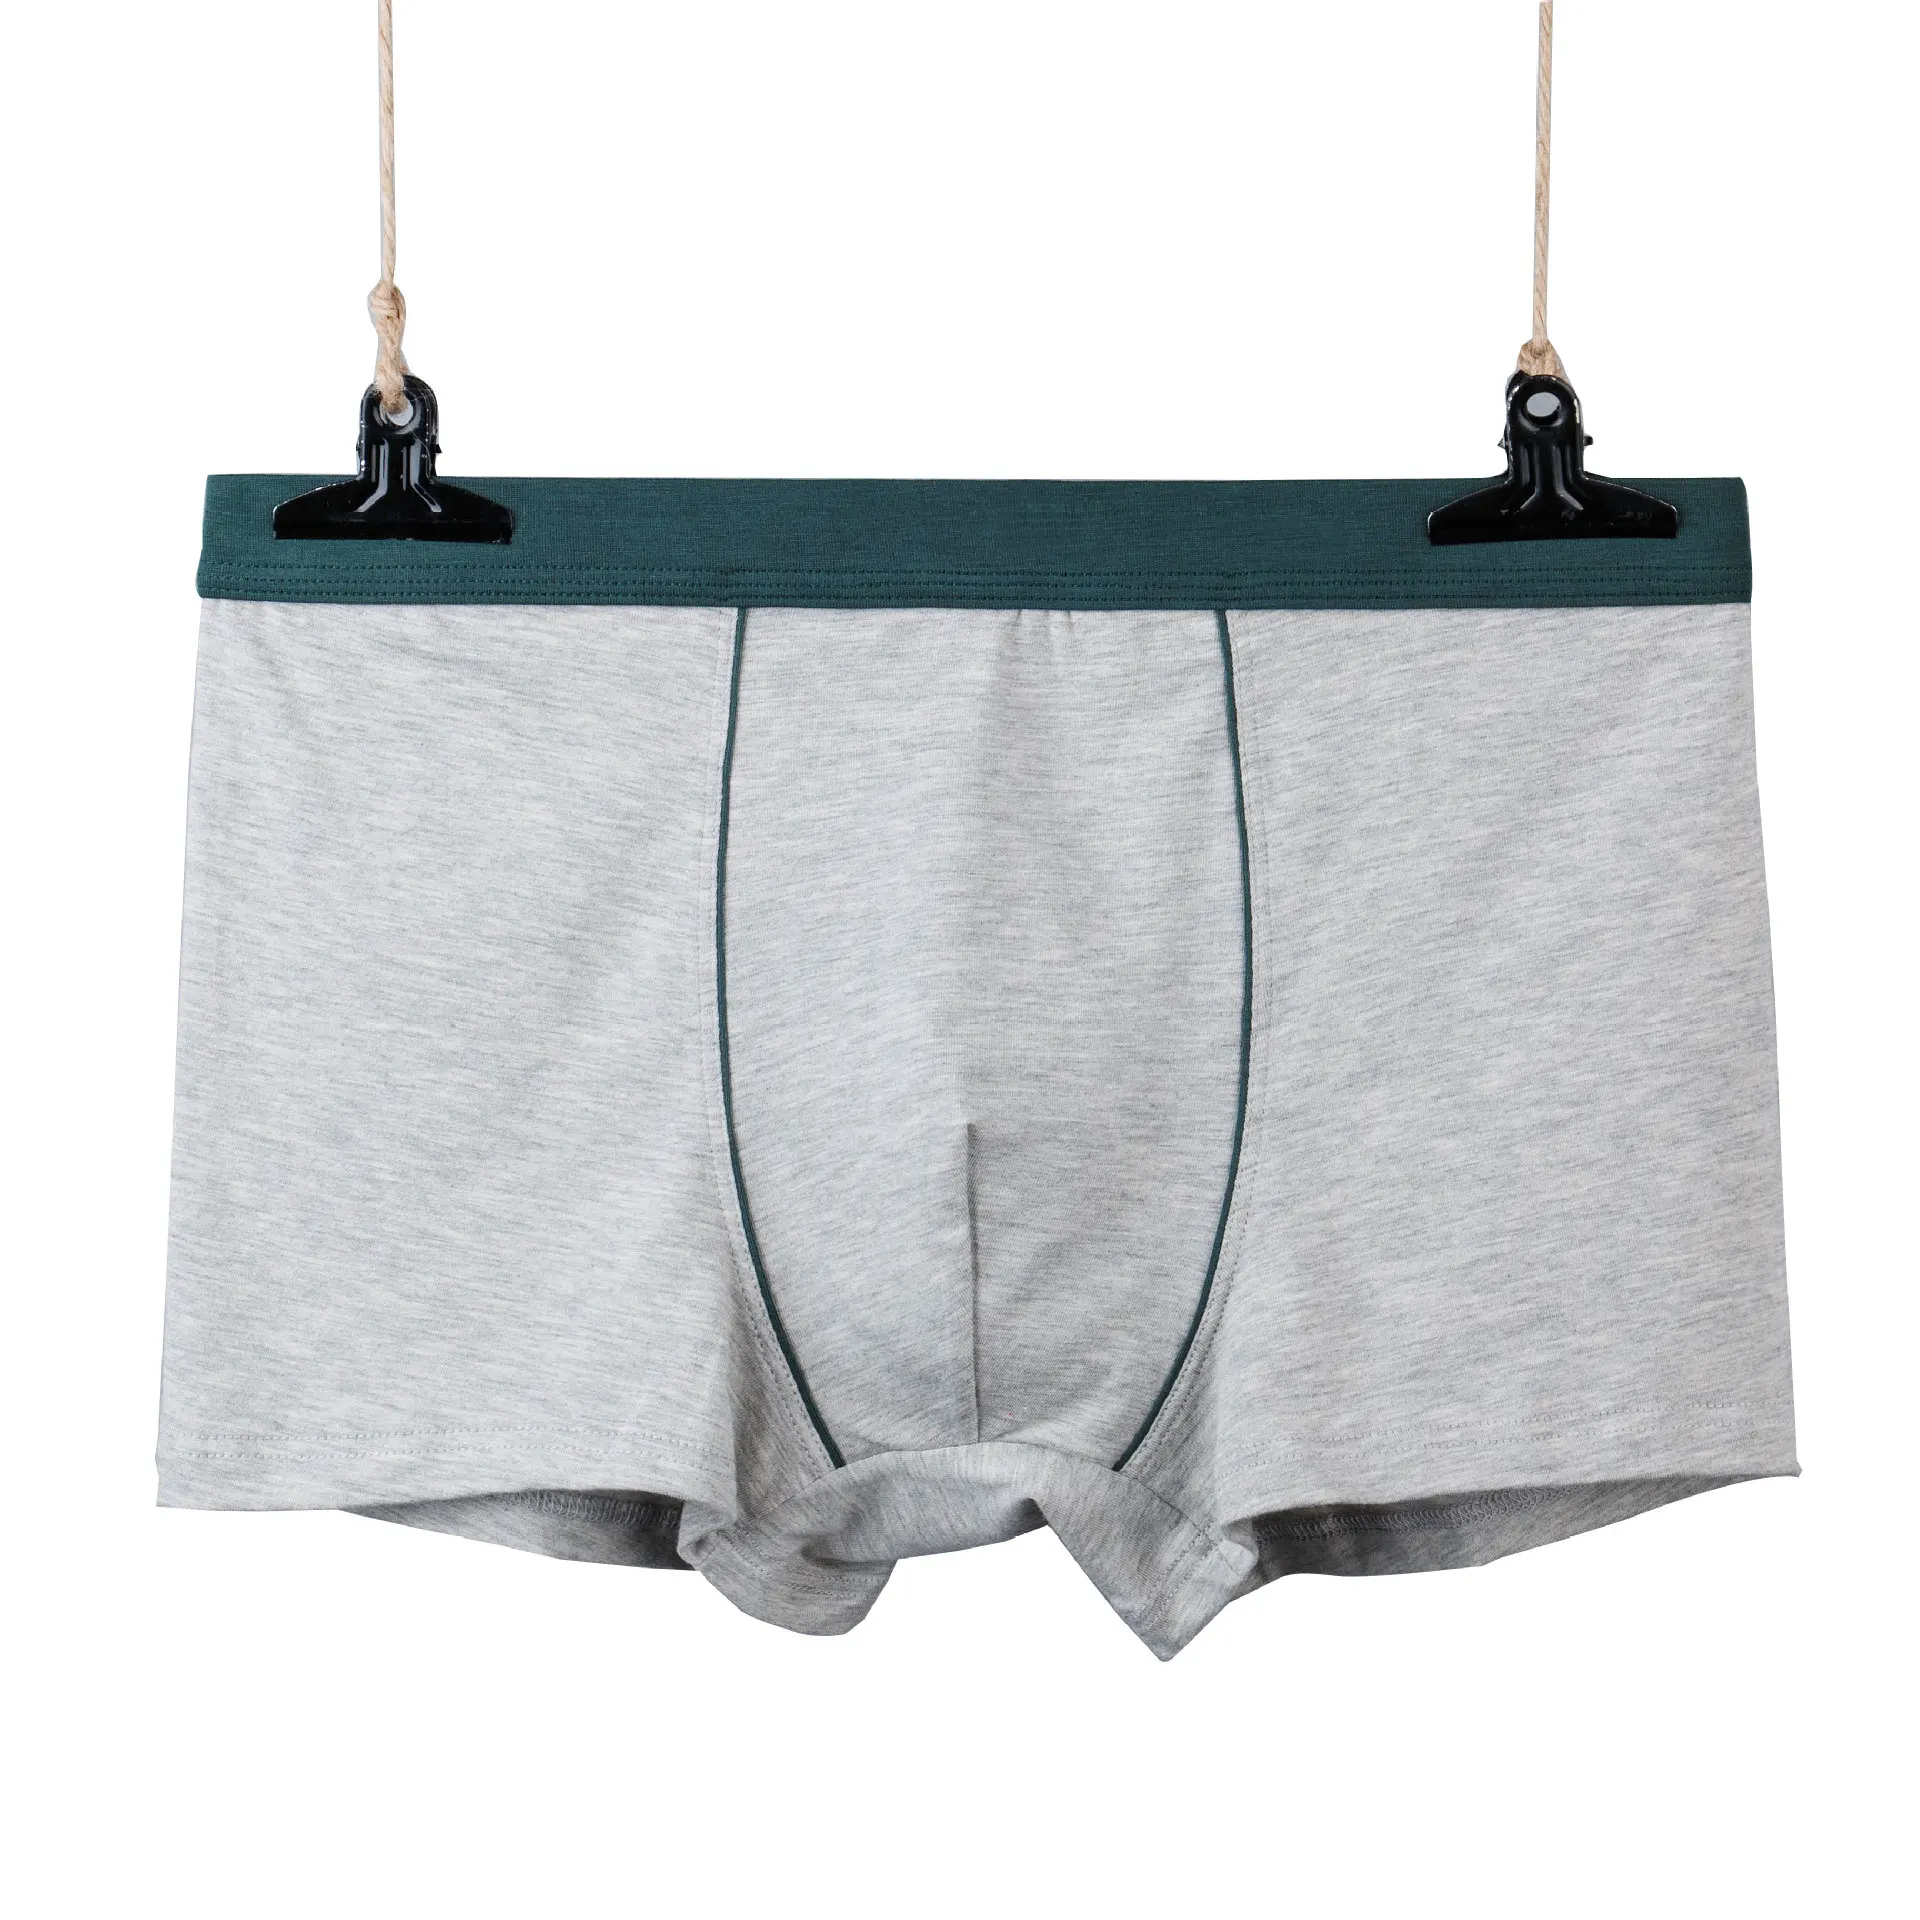 Amazon Best Sale Men's Underwear 5 Pack Underwear Boxer Briefs Cotton ...